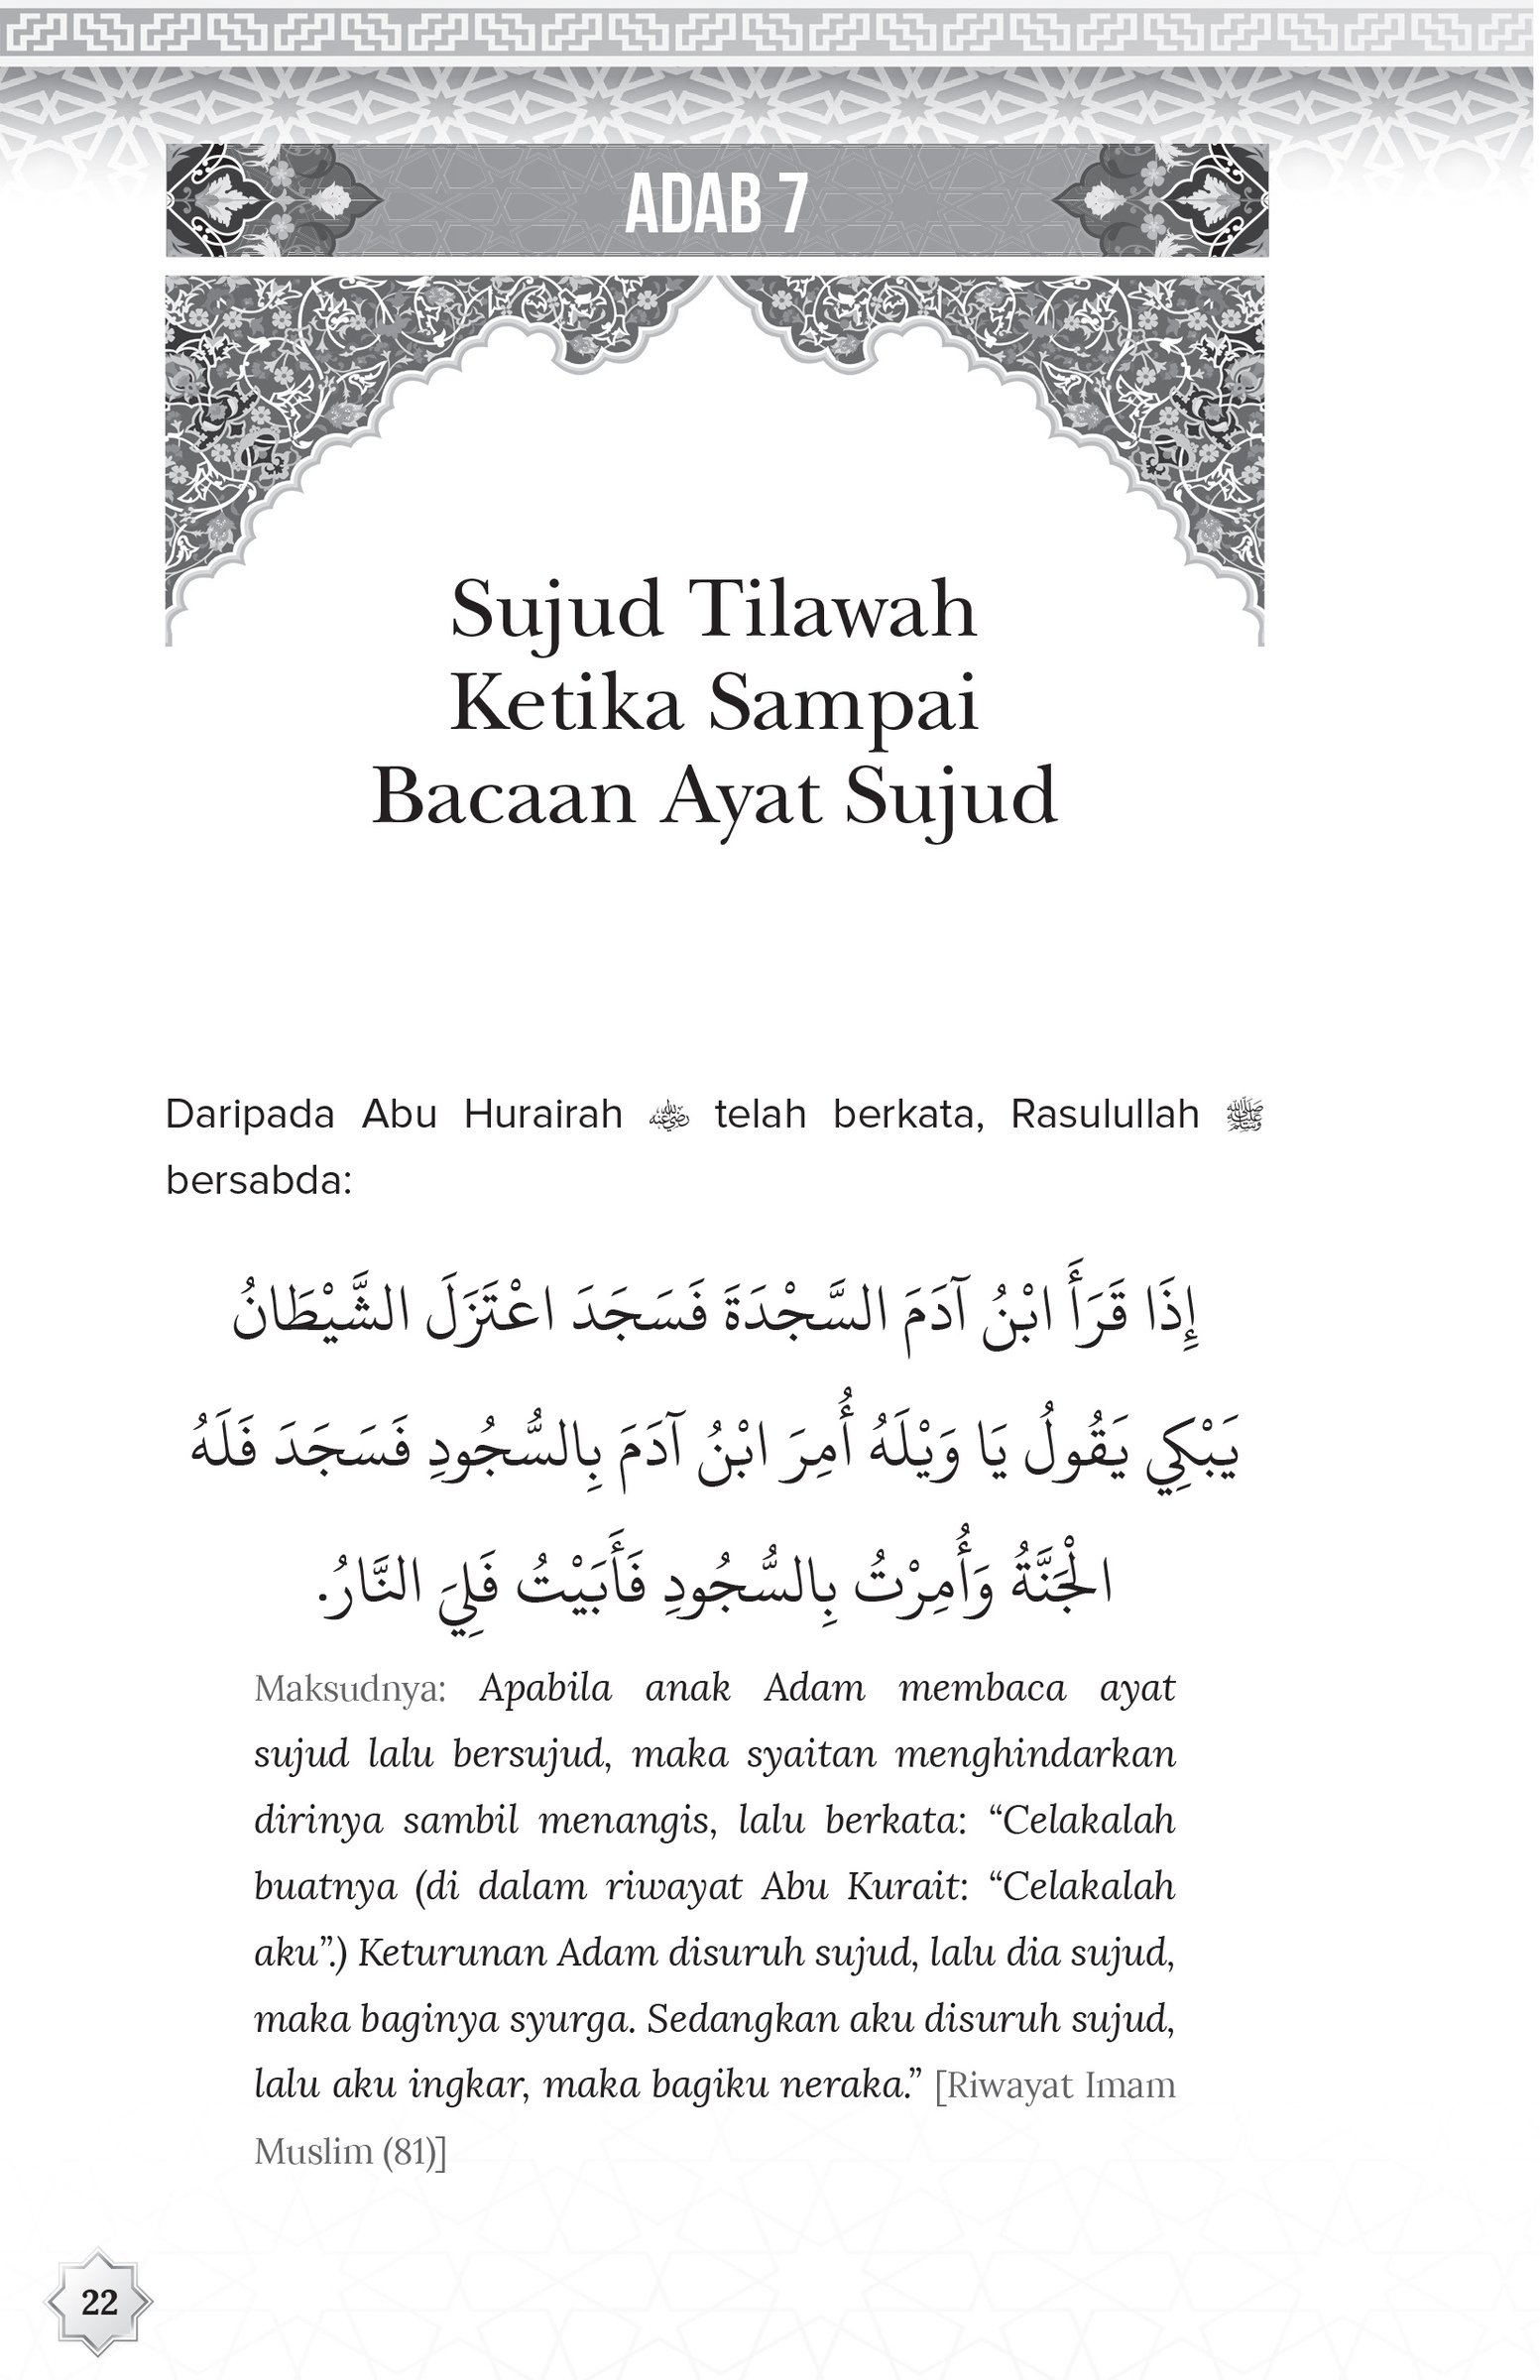 FA 36 Adab Terhadap al-Quran-36